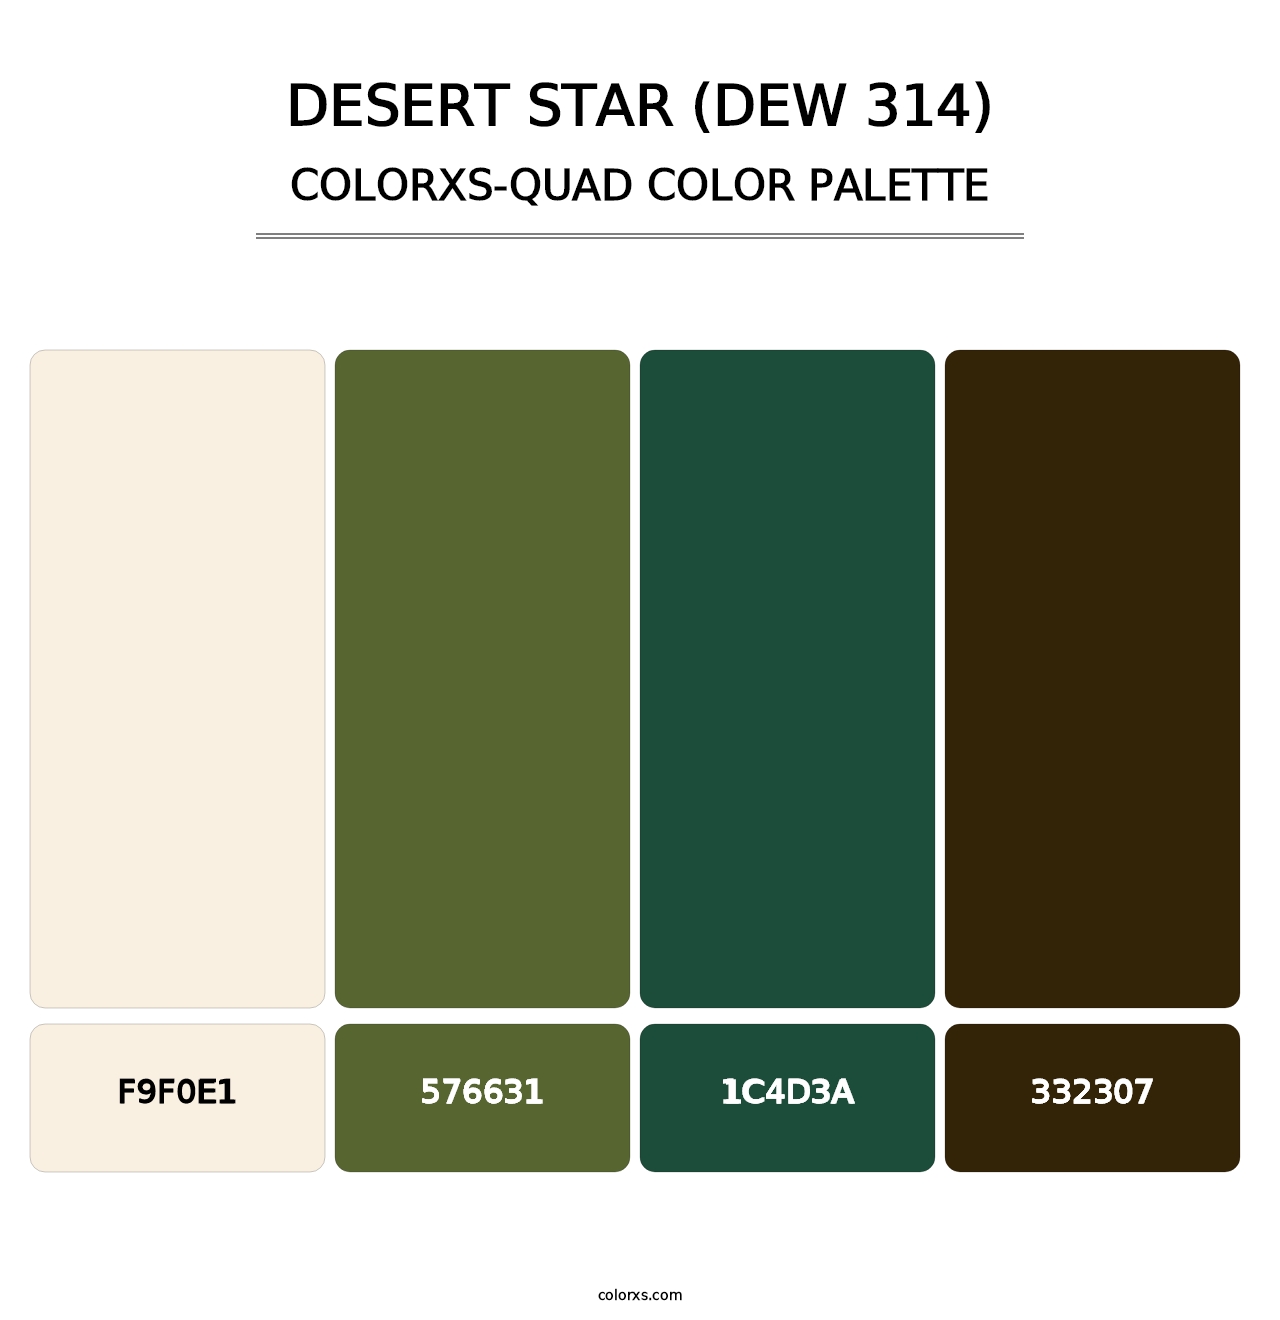 Desert Star (DEW 314) - Colorxs Quad Palette